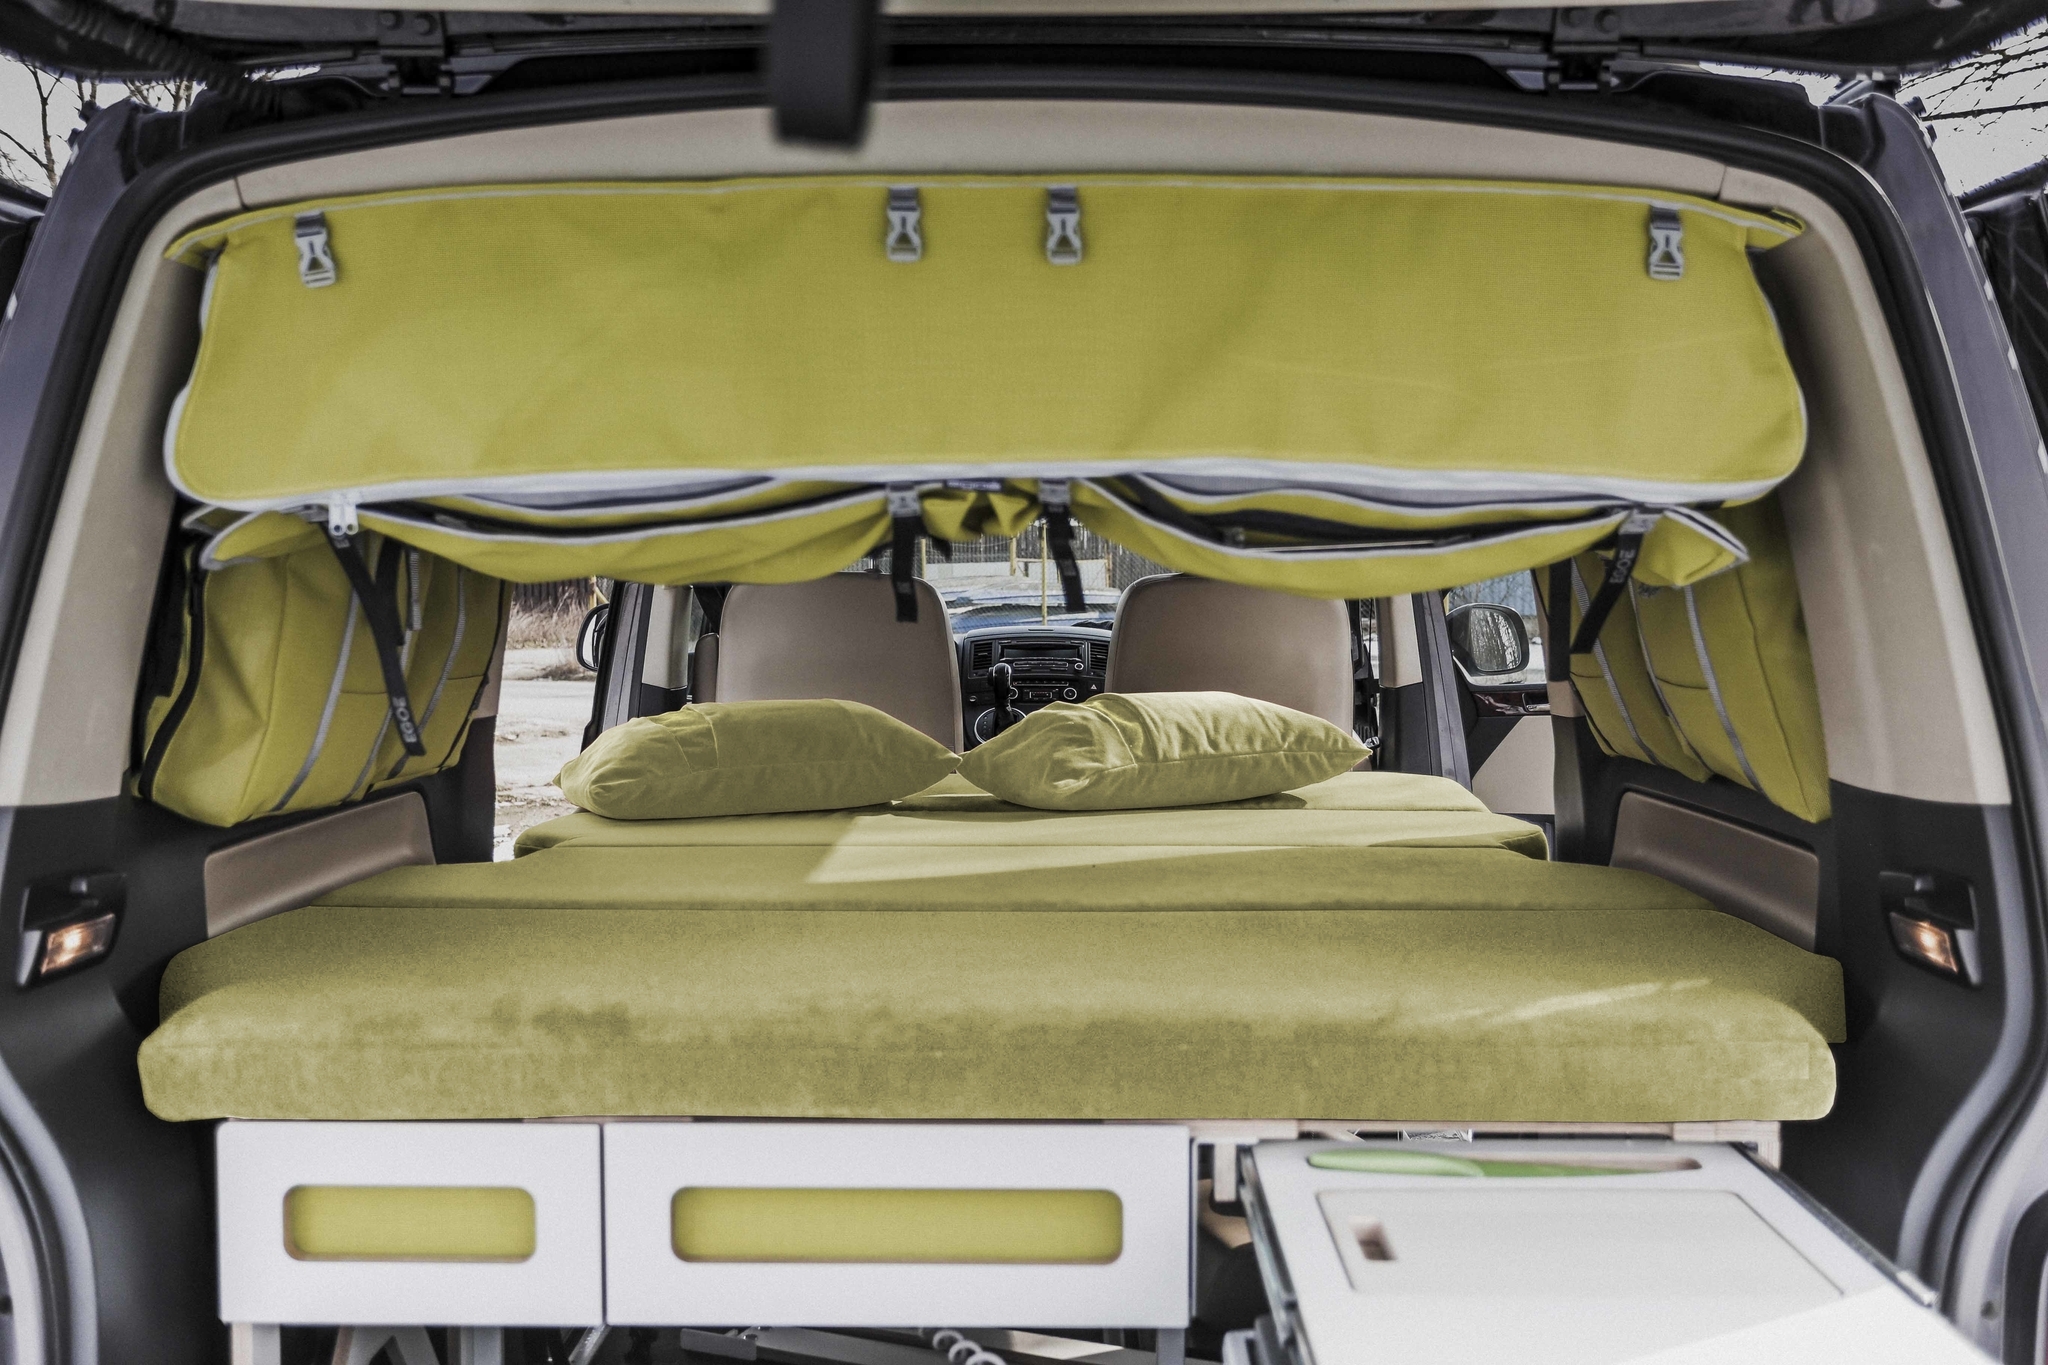 Немецкая компания Irmscher сделала из Volkswagen Multivan внедорожный дом на колёсах